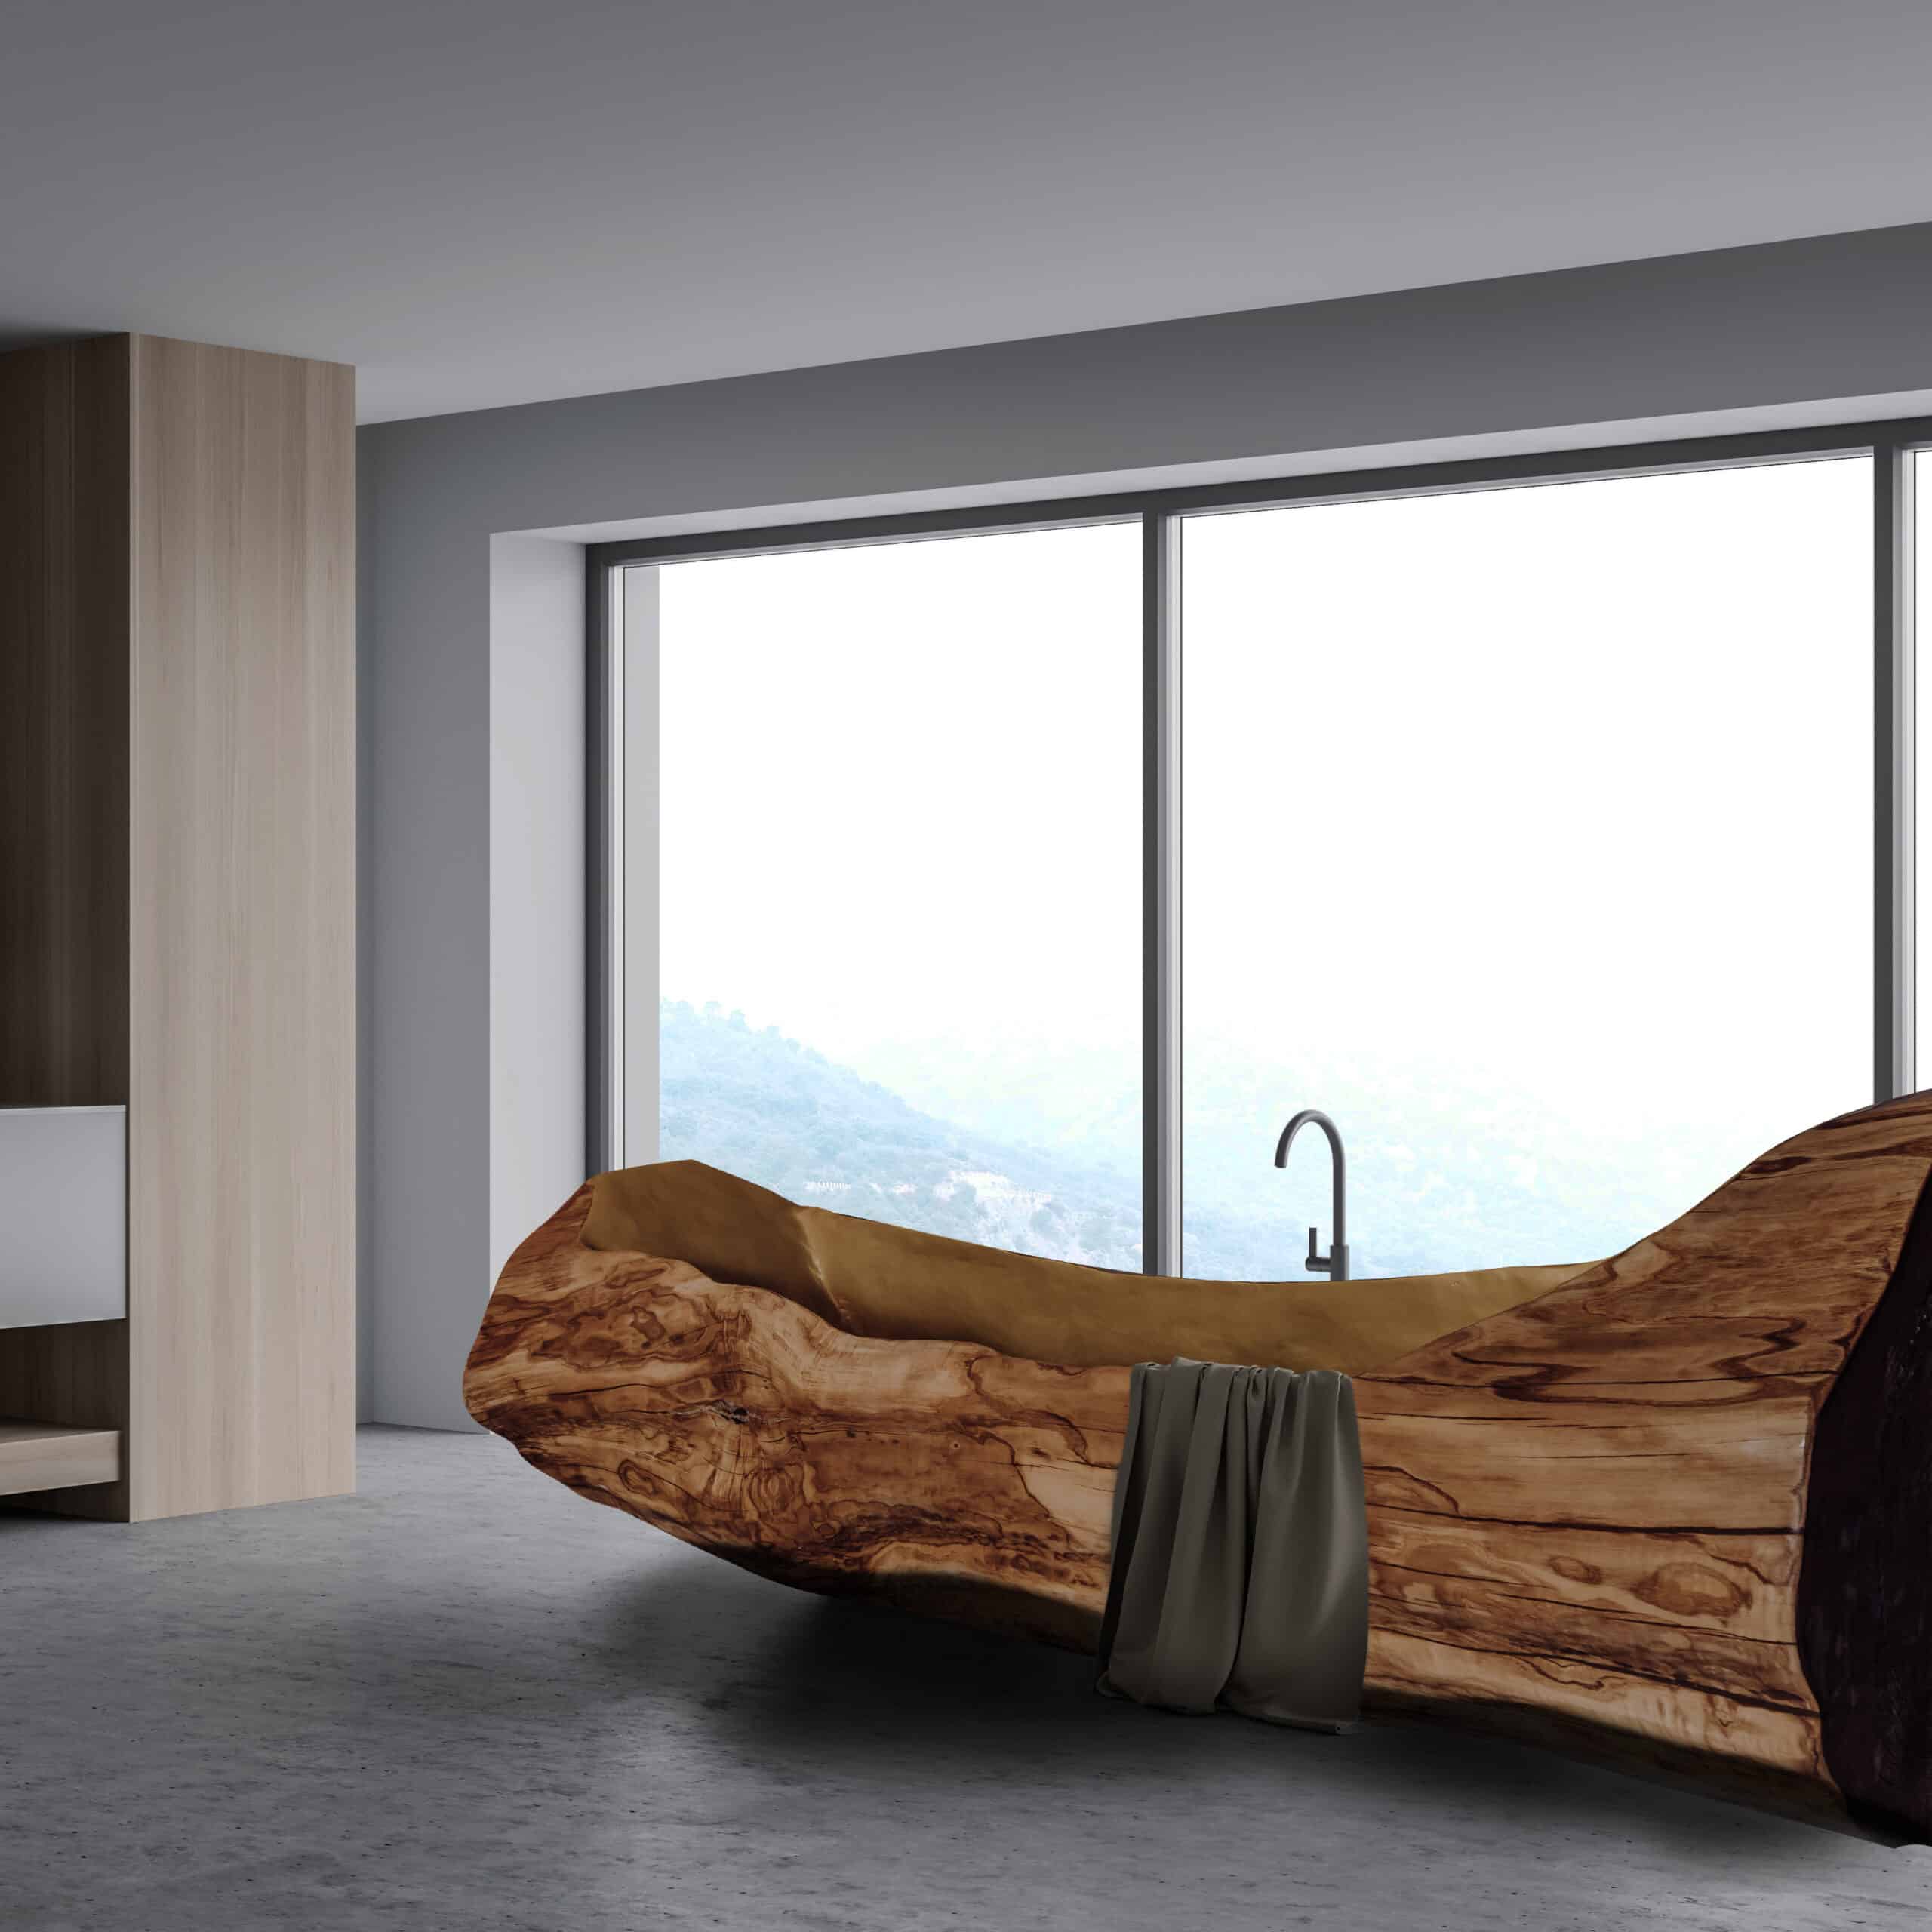 Kanu-Badewanne - Interieur-Wohndesign-Raumbeispiel